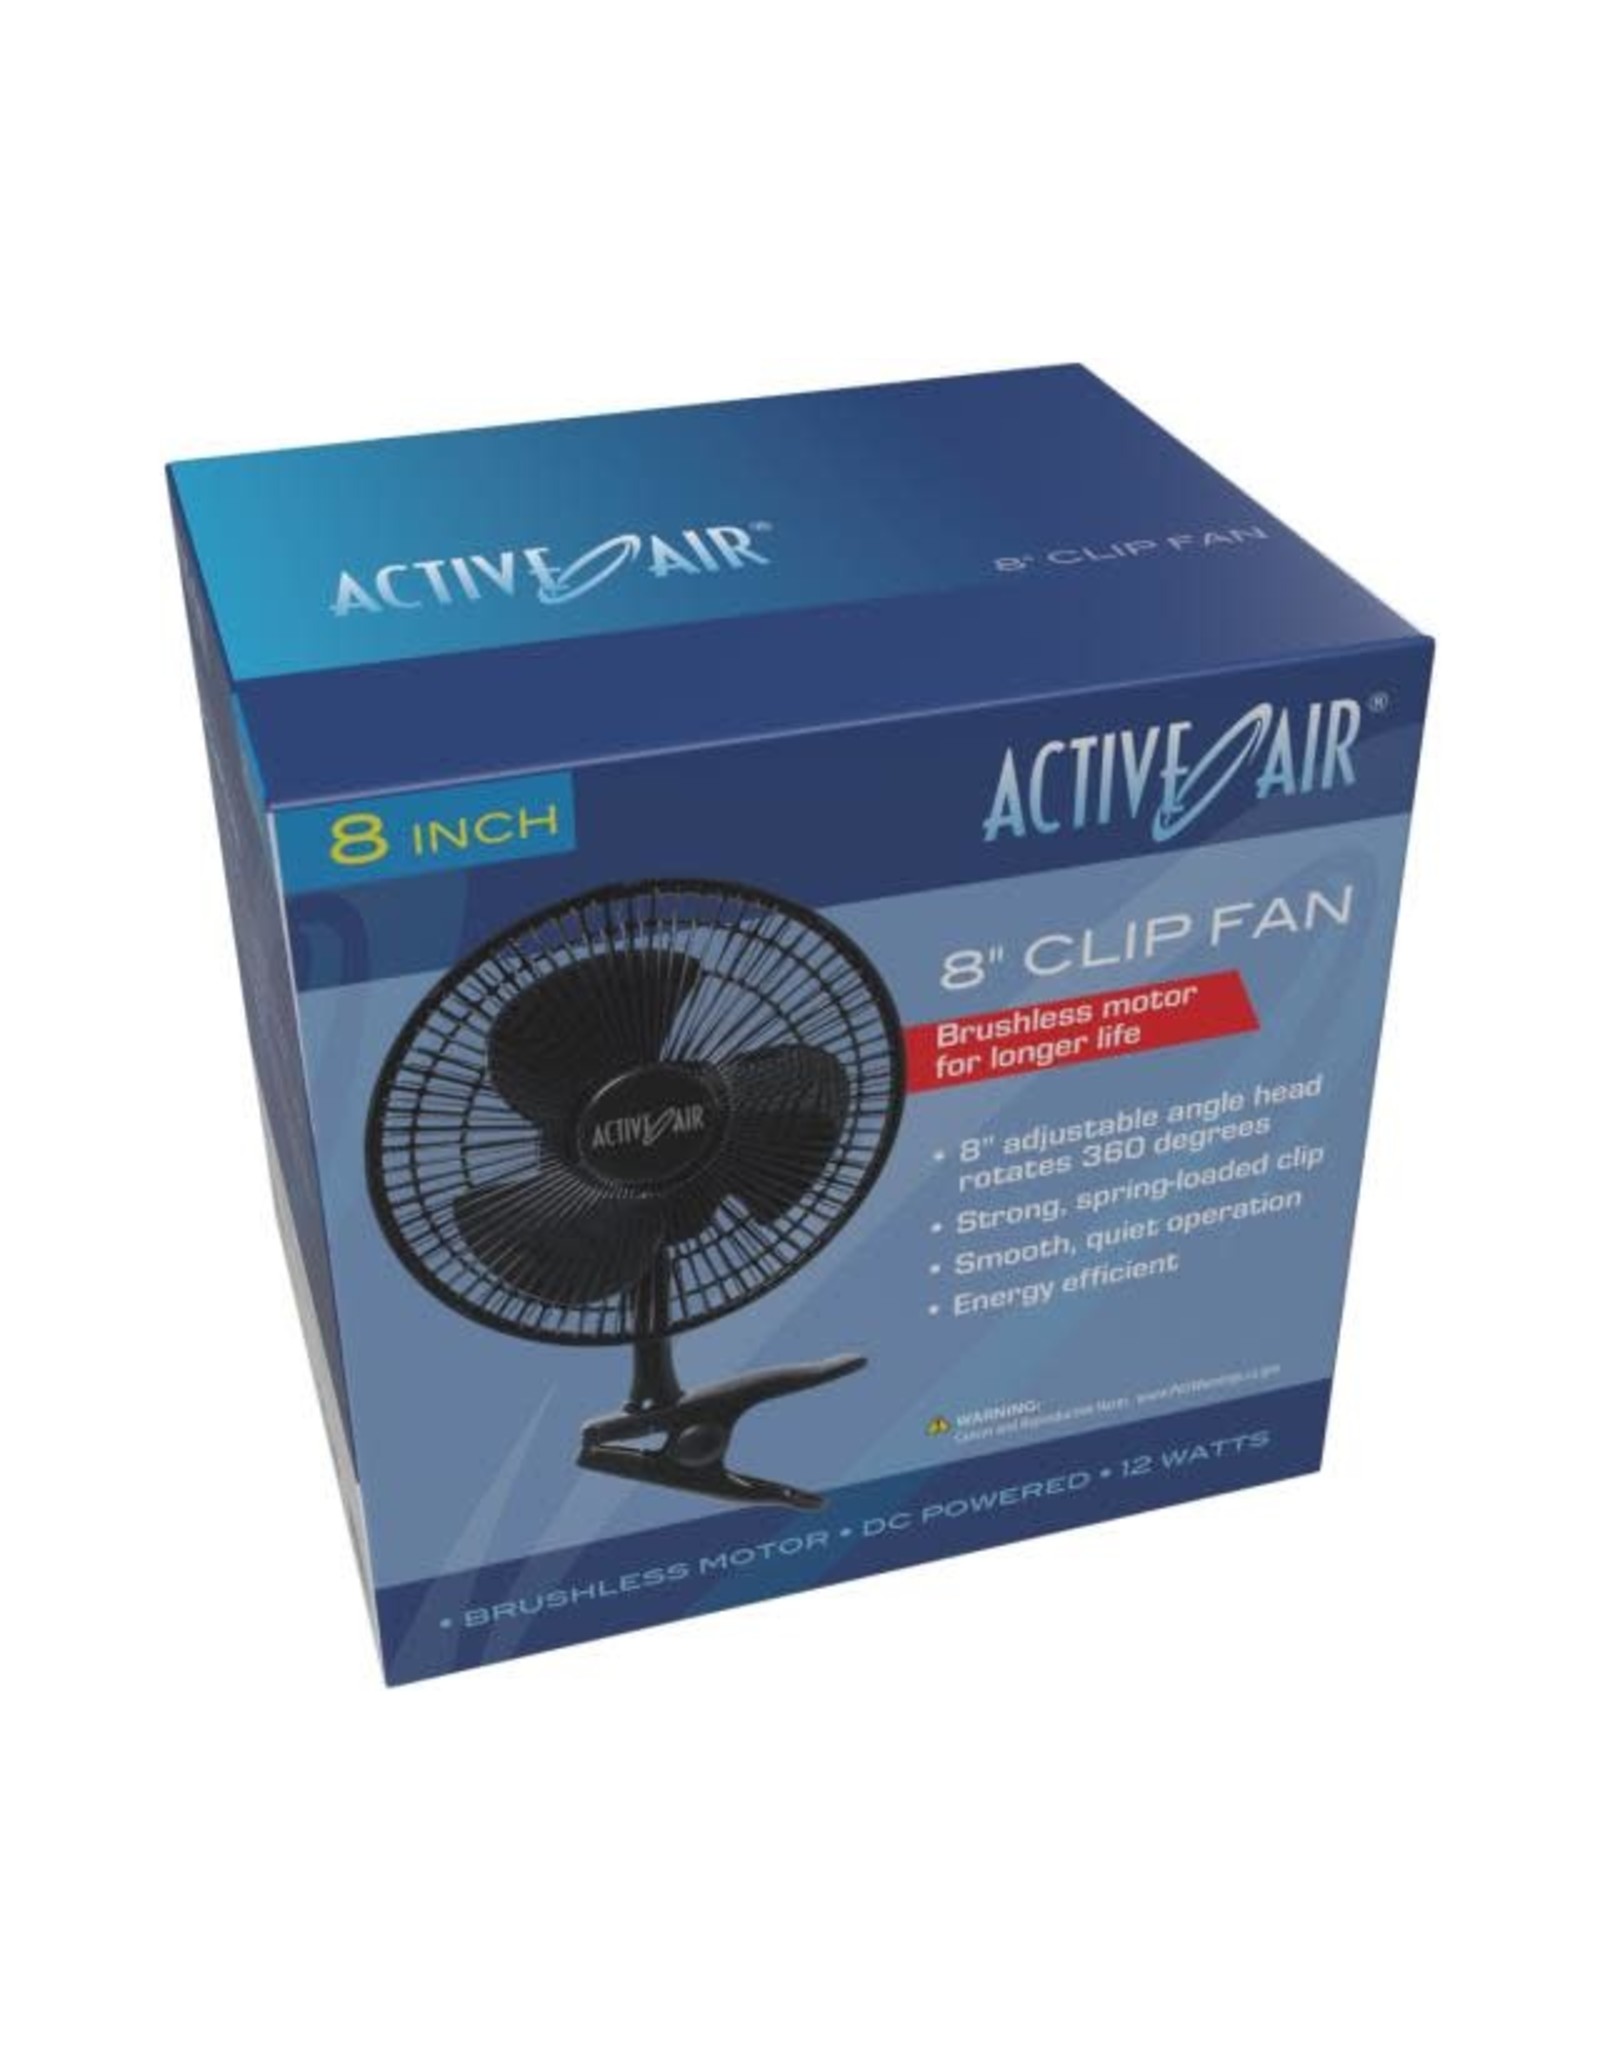 Active Air Active Air 8" Clip Fan, 10W